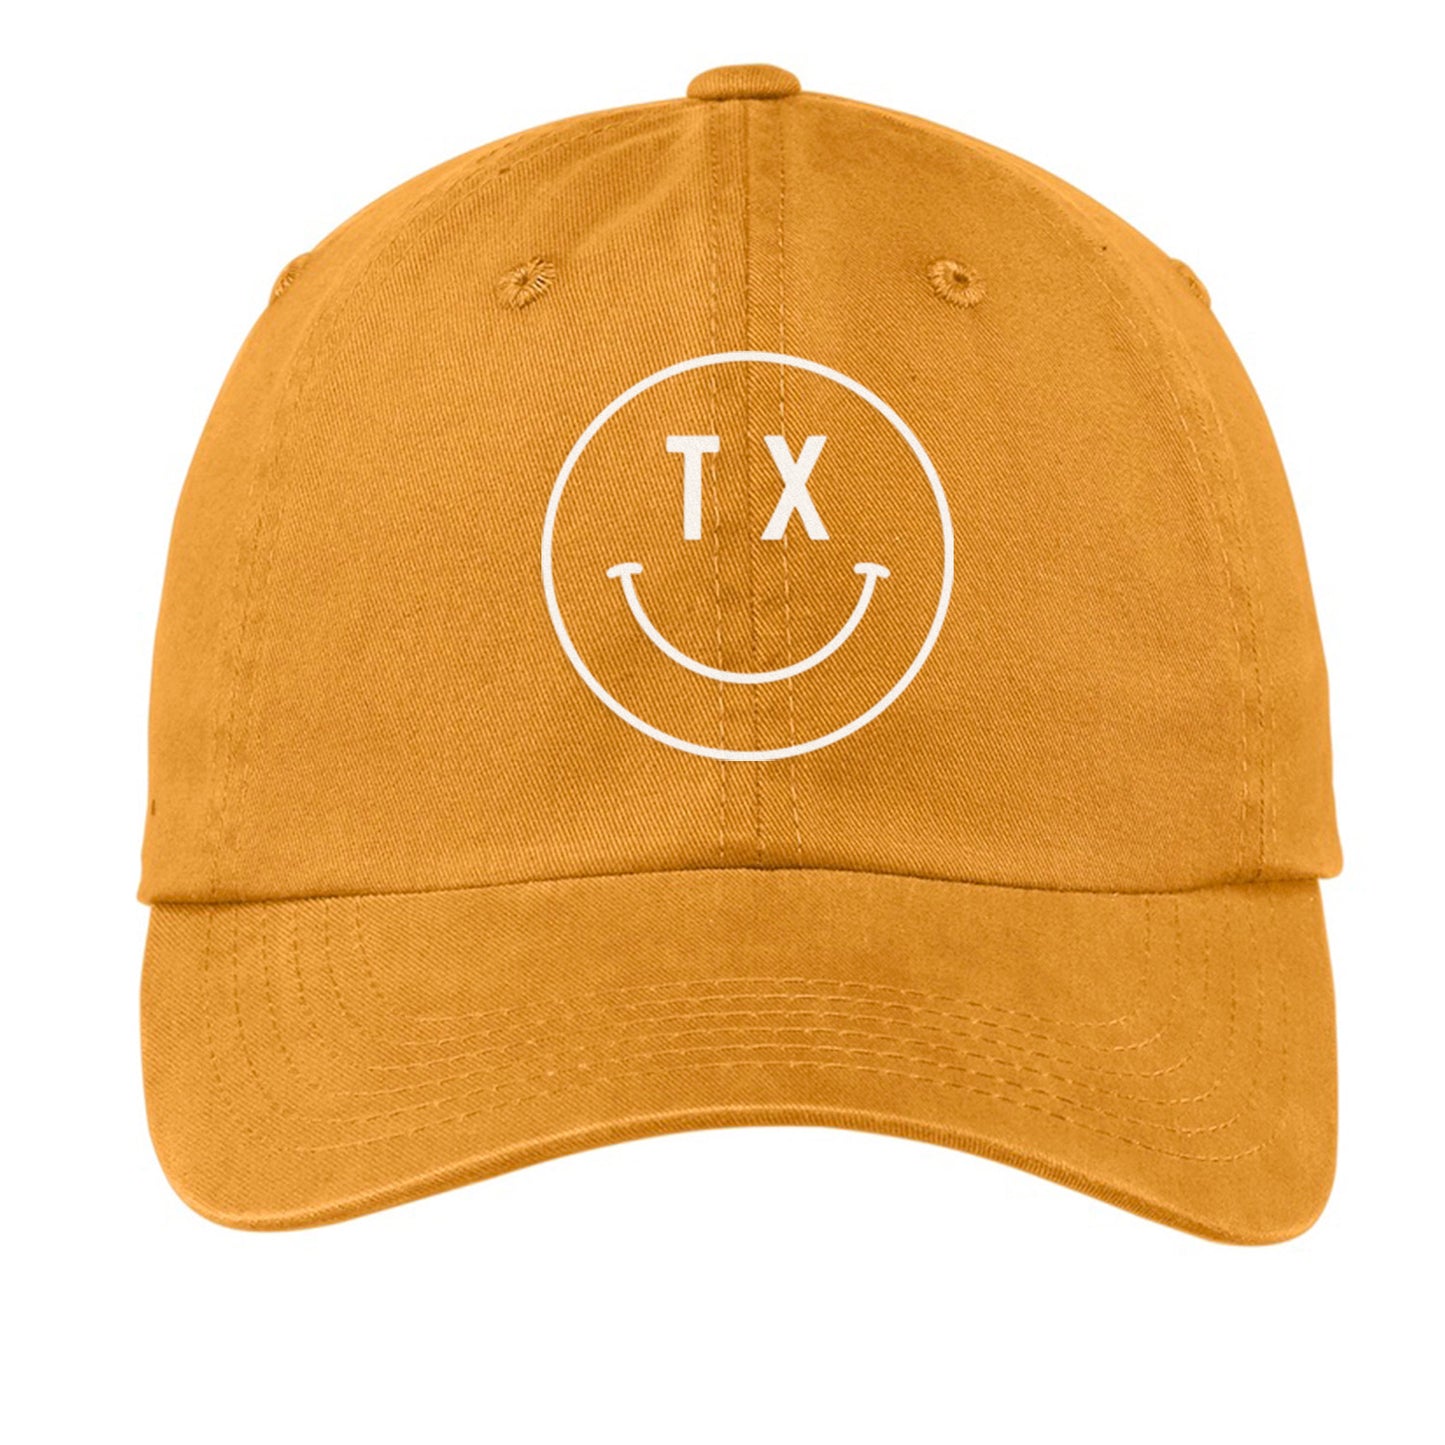 TX Smiley Face Baseball Cap